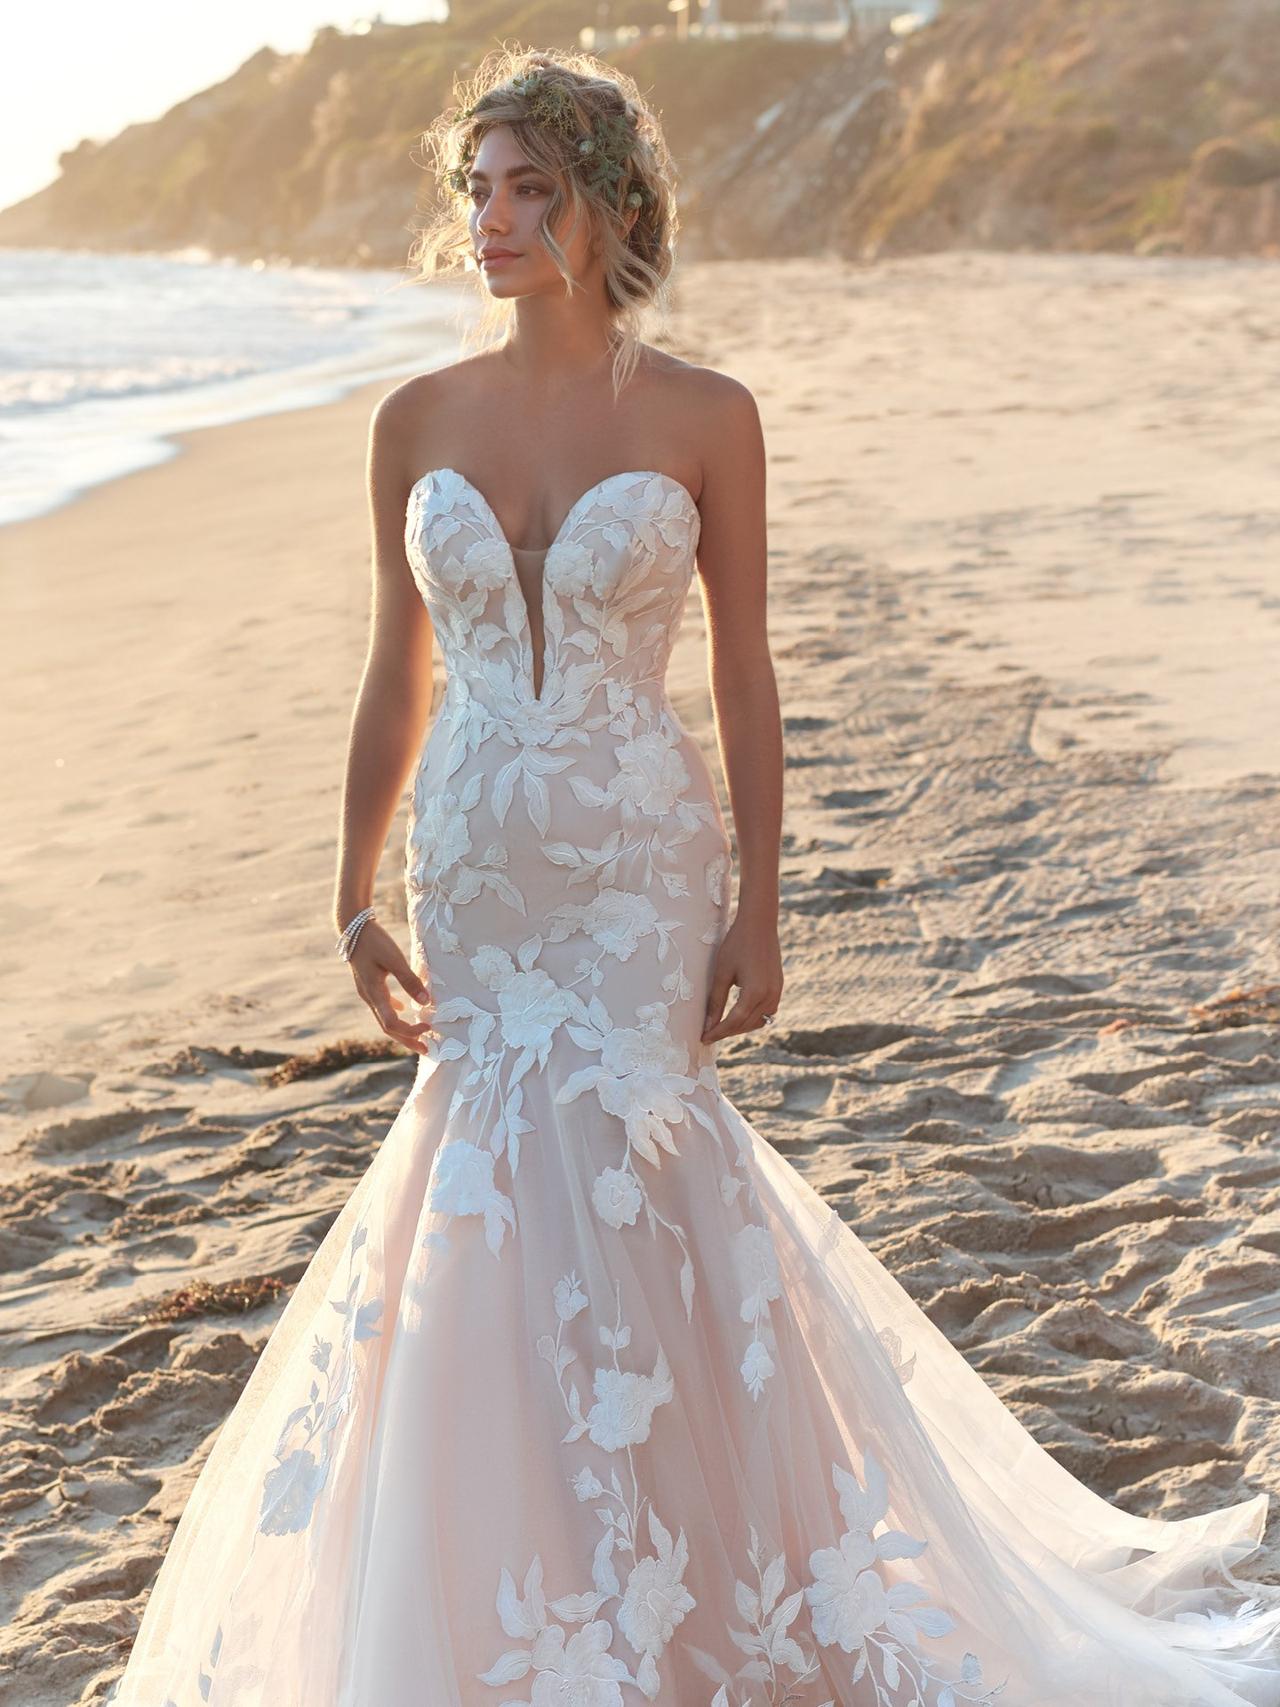 Is it appropriate to wear a very low-cut wedding dress? - Quora